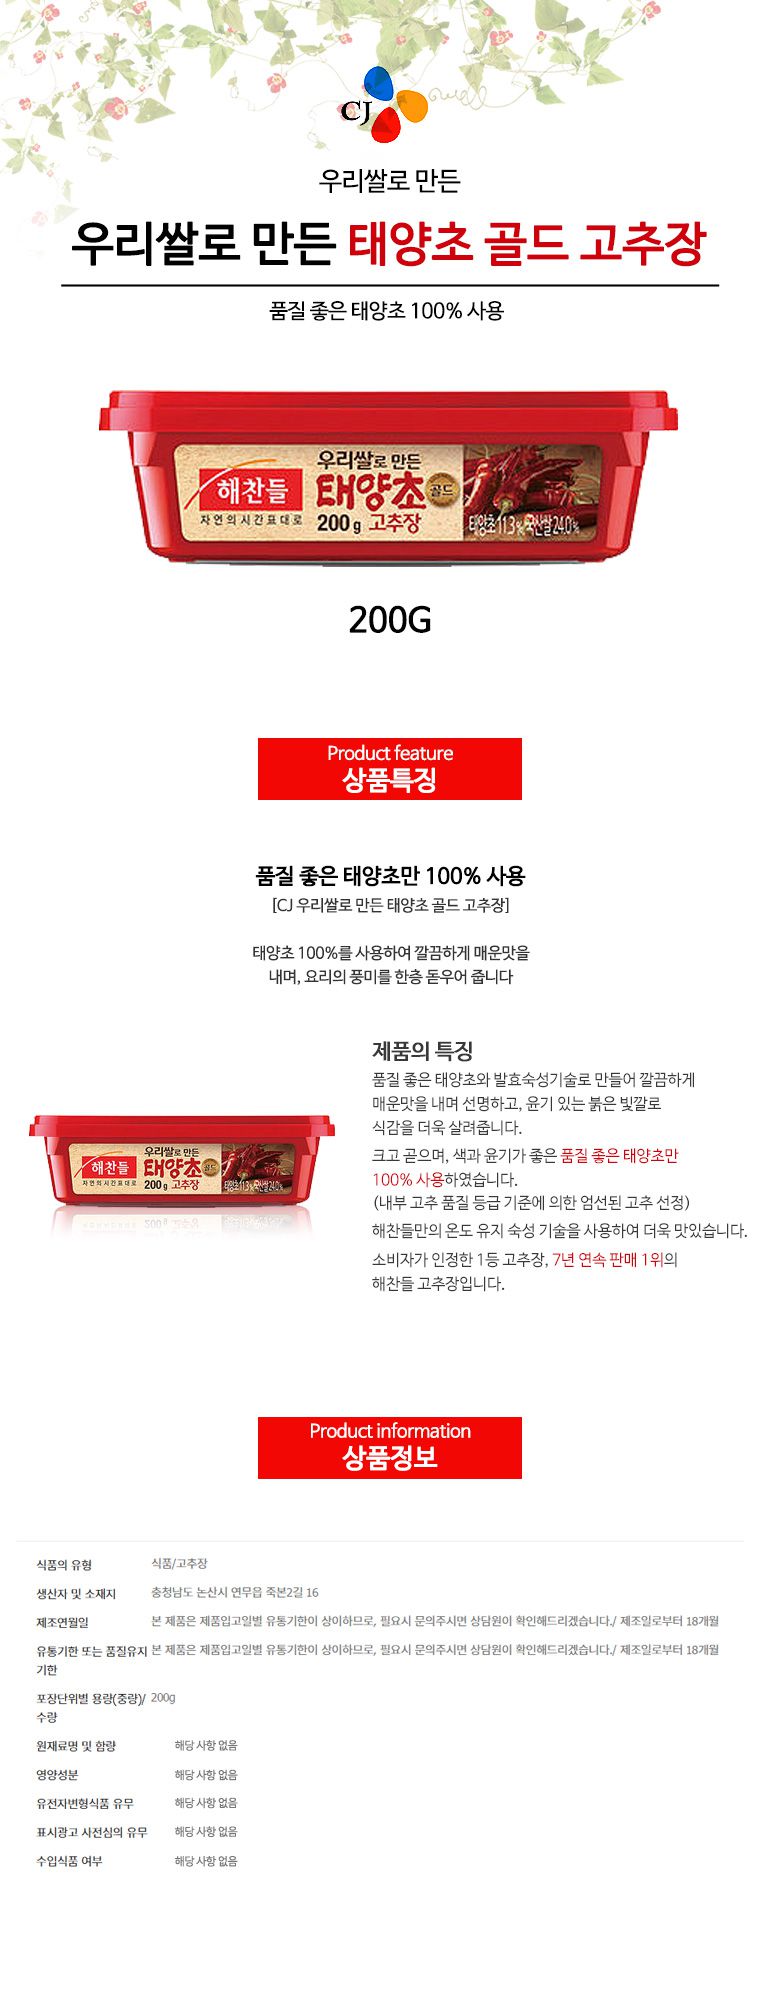 韓國食品-[CJ] Haechandle Hot Pepper Paste 200g